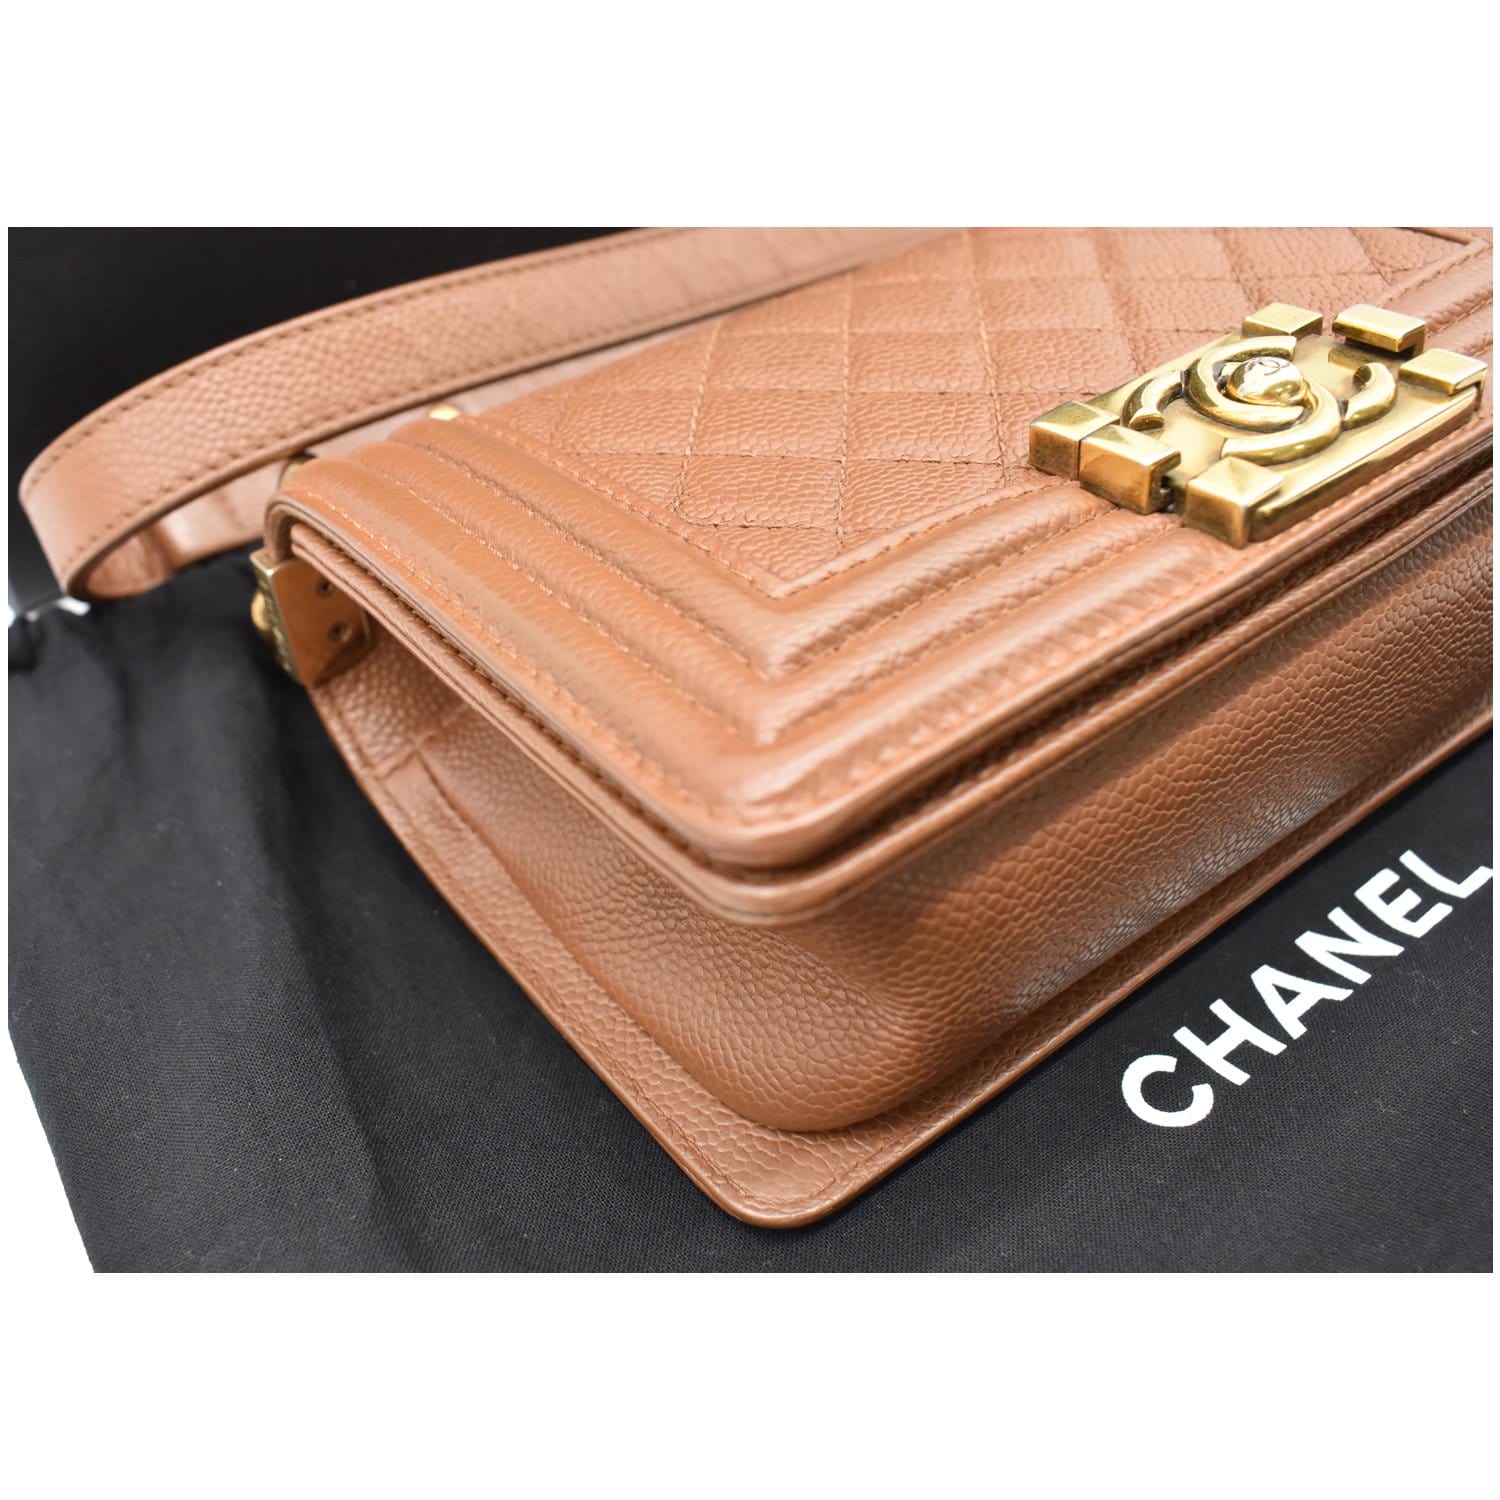 Chanel Small Boy CC Chain Leather Shoulder Bag - DDH